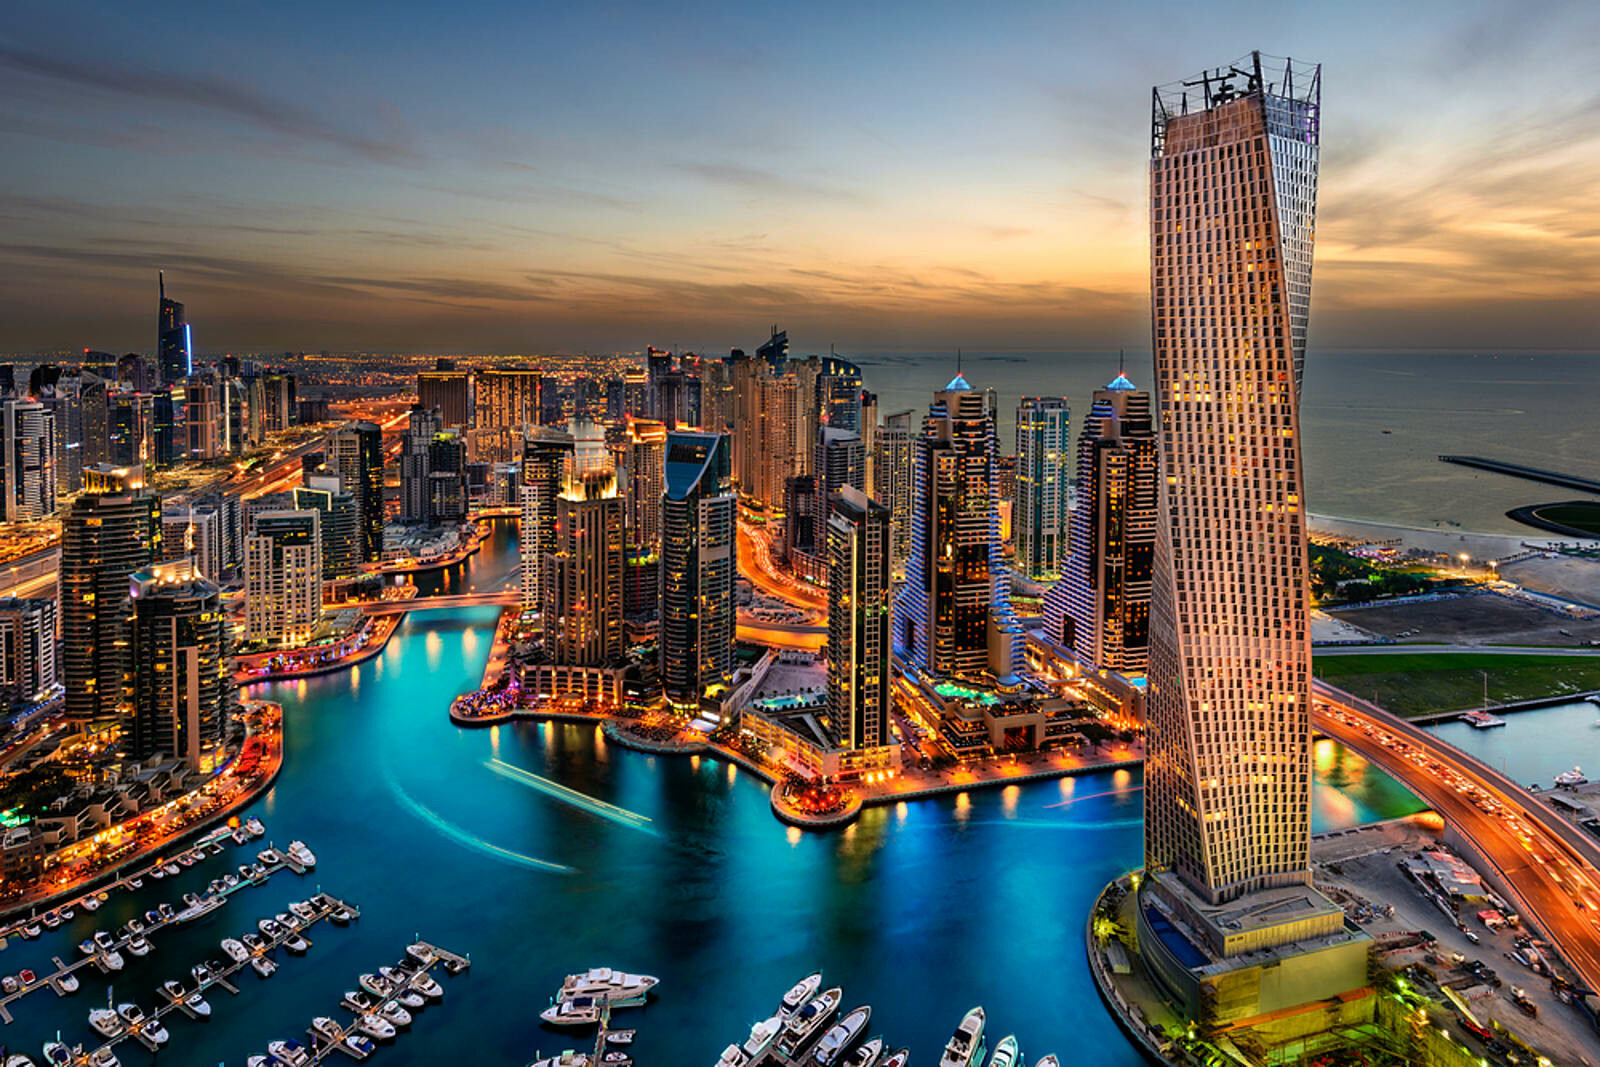 تقرير بريطاني: دبي الأولى عالمياً في مشروعات الاستثمار الأجنبي المباشر 2021 